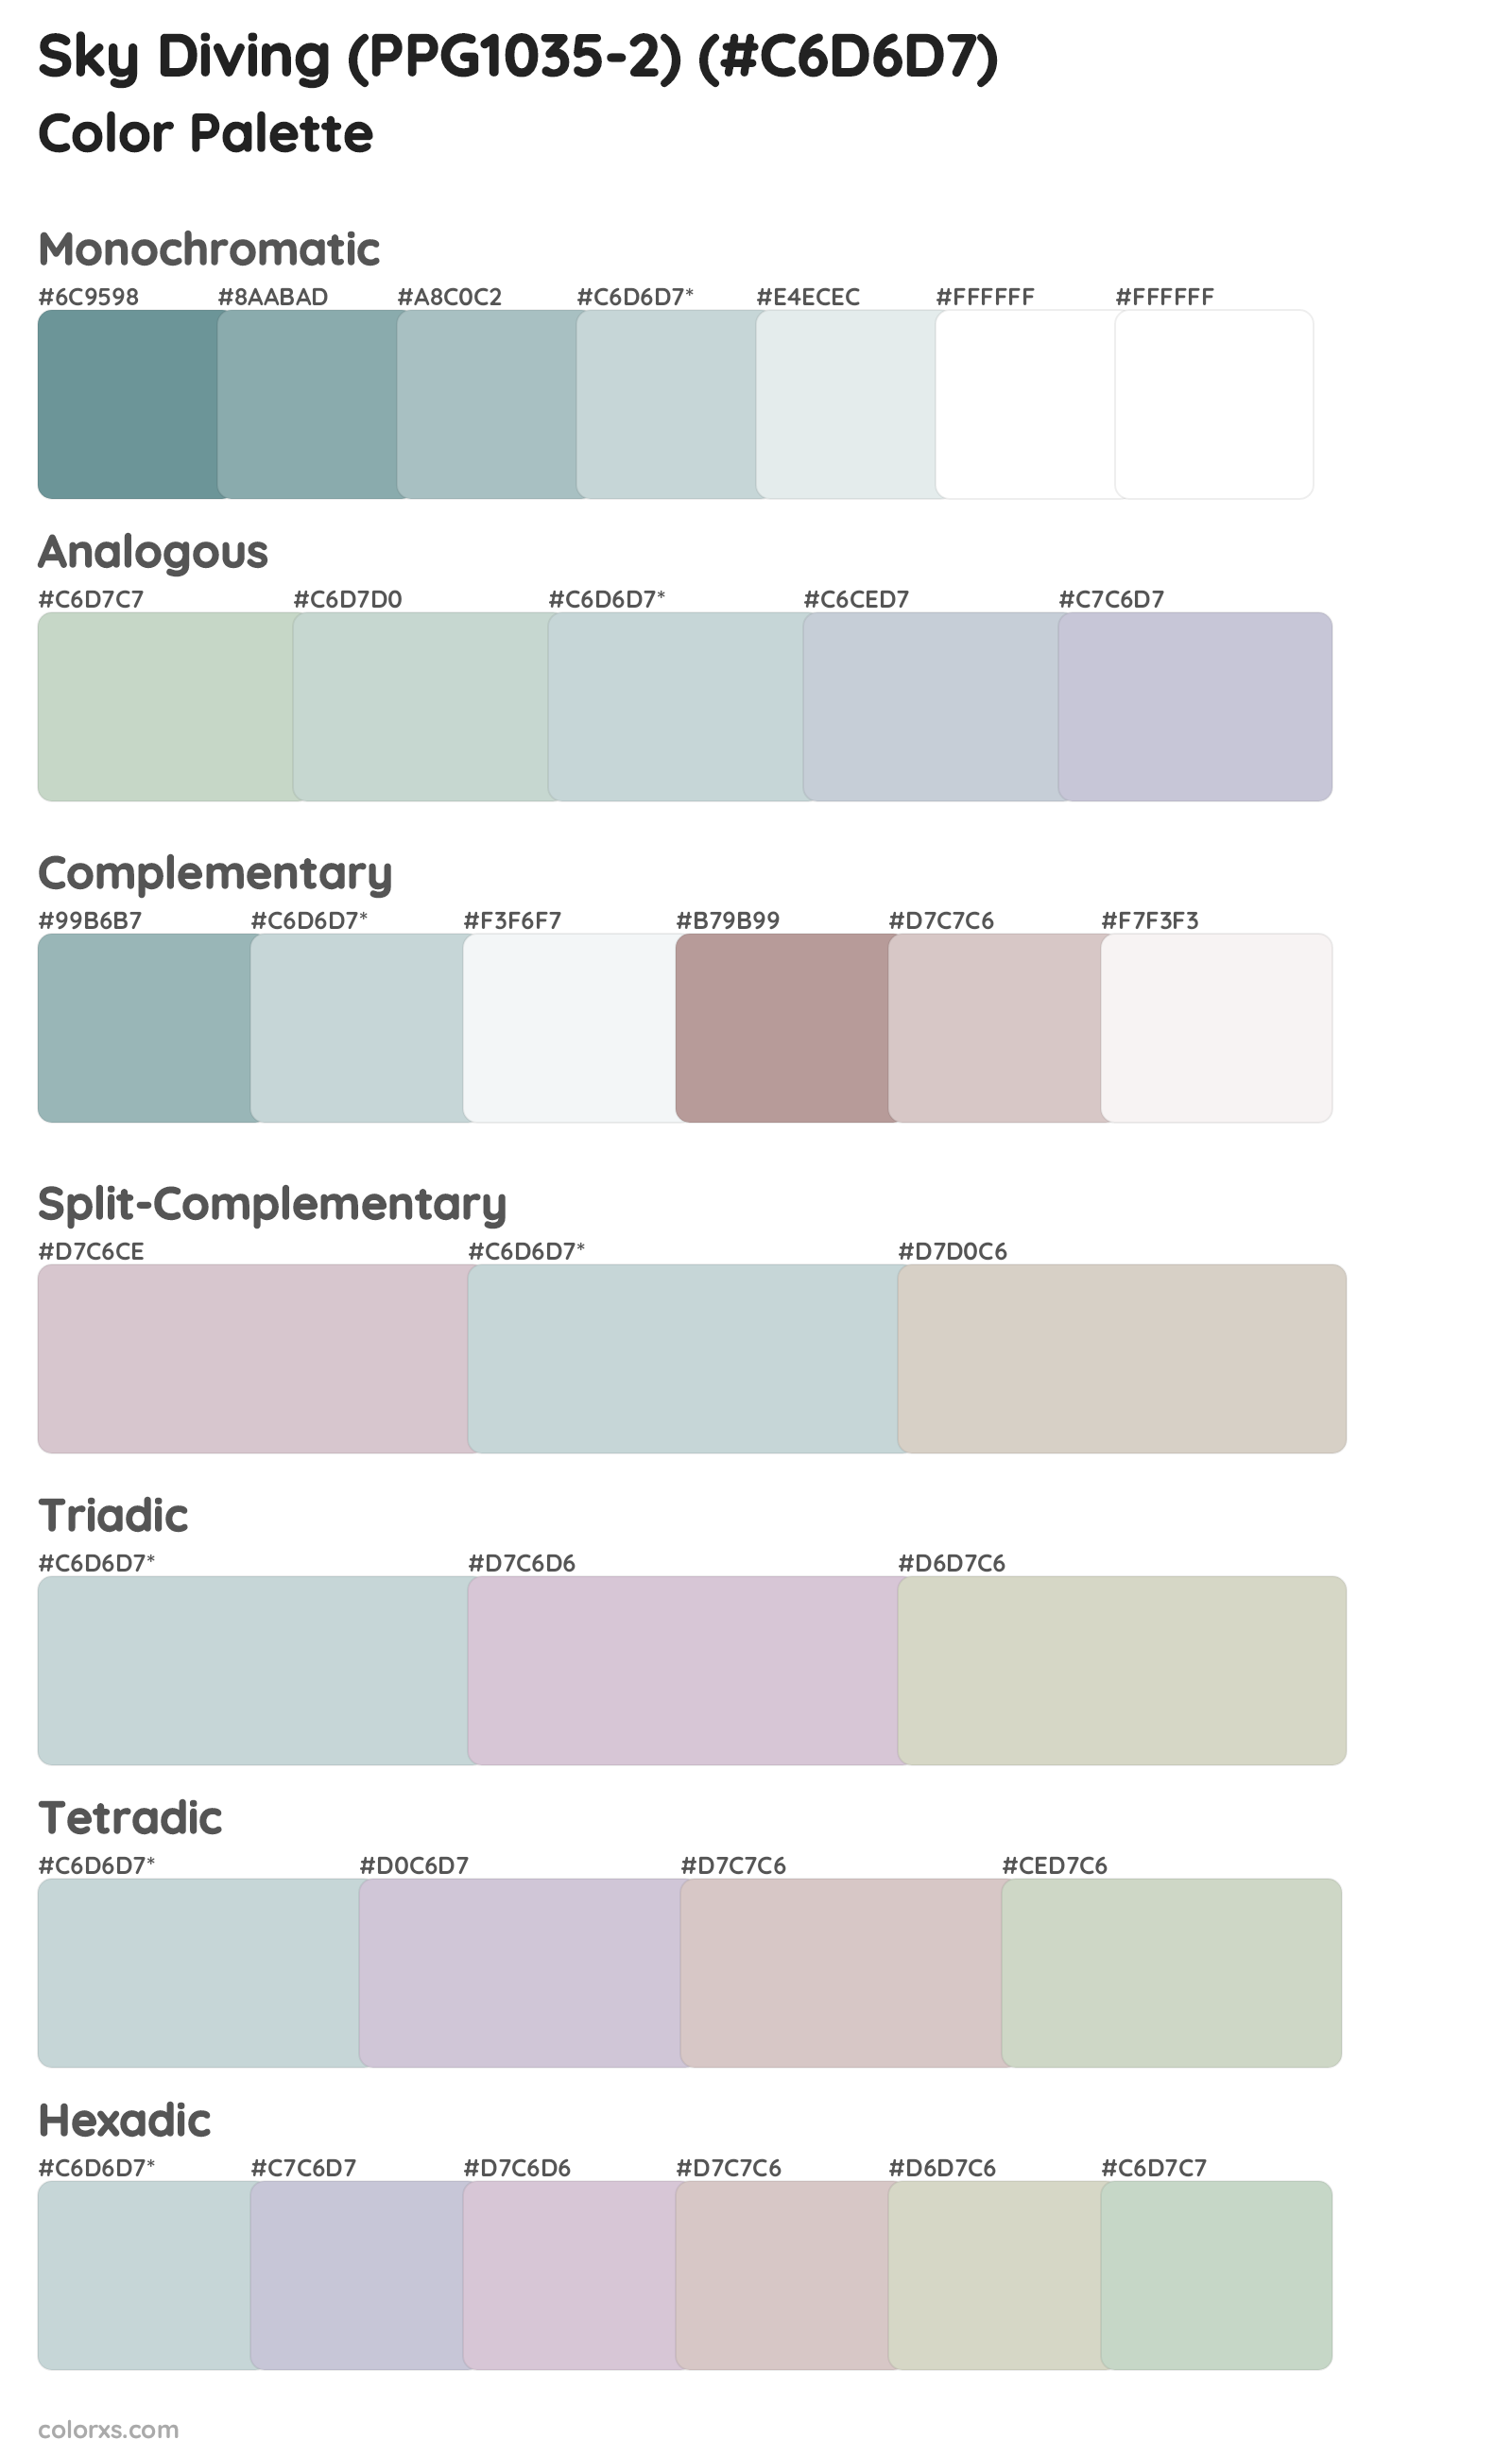 Sky Diving (PPG1035-2) Color Scheme Palettes